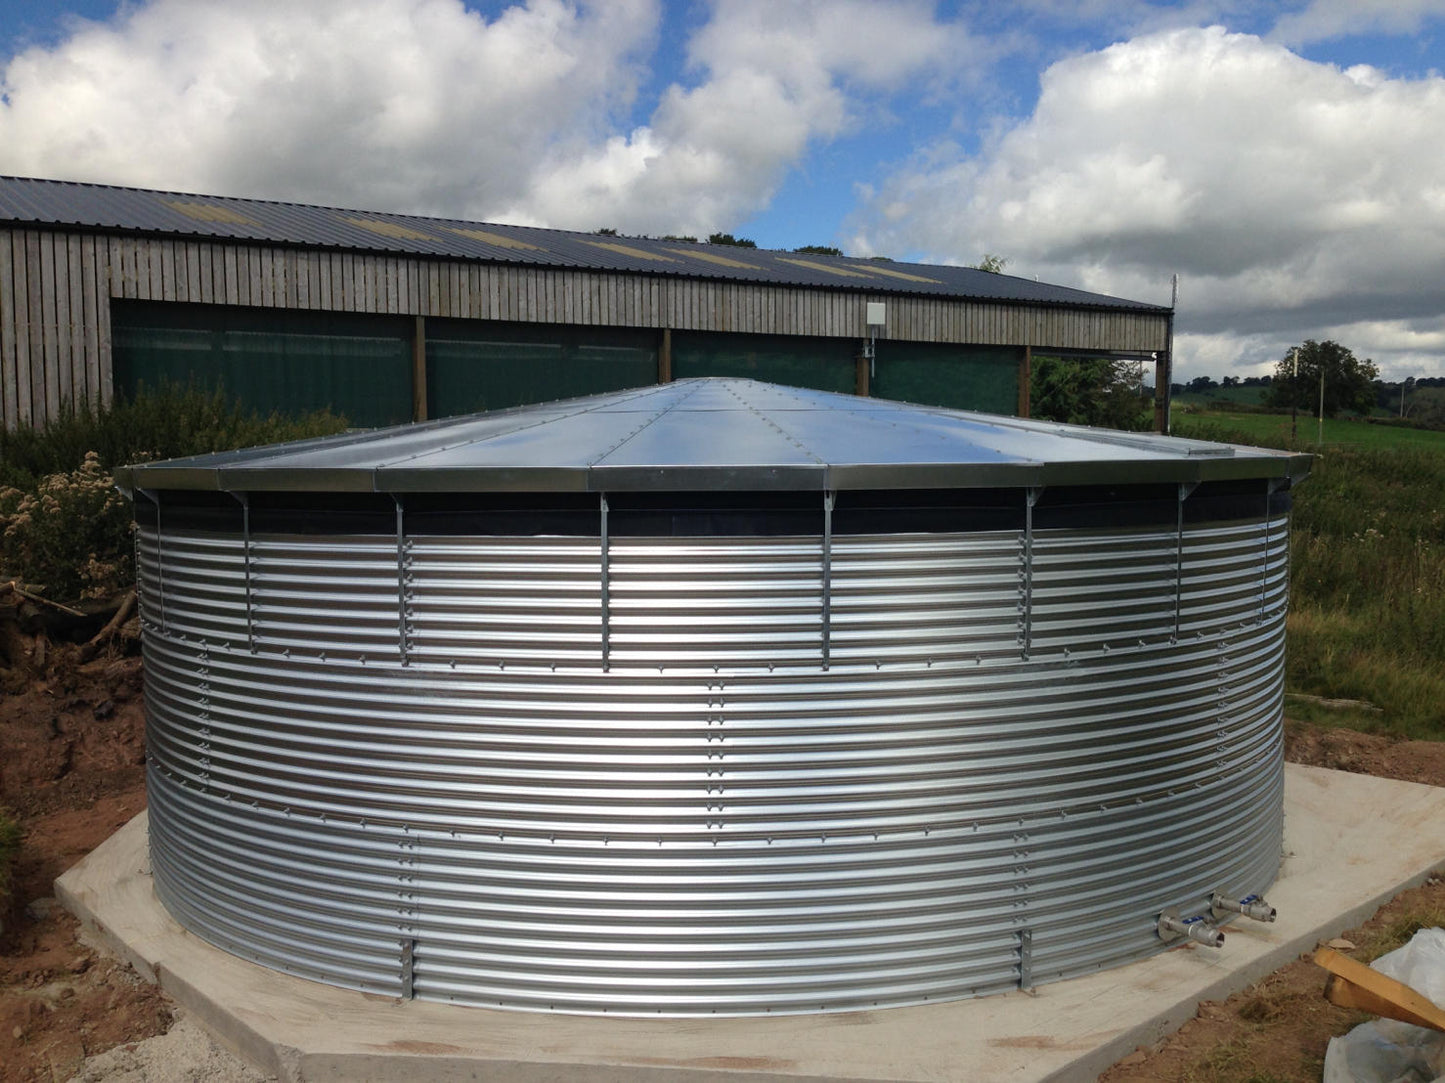 192,200 litre Galvanised Steel Water Tank